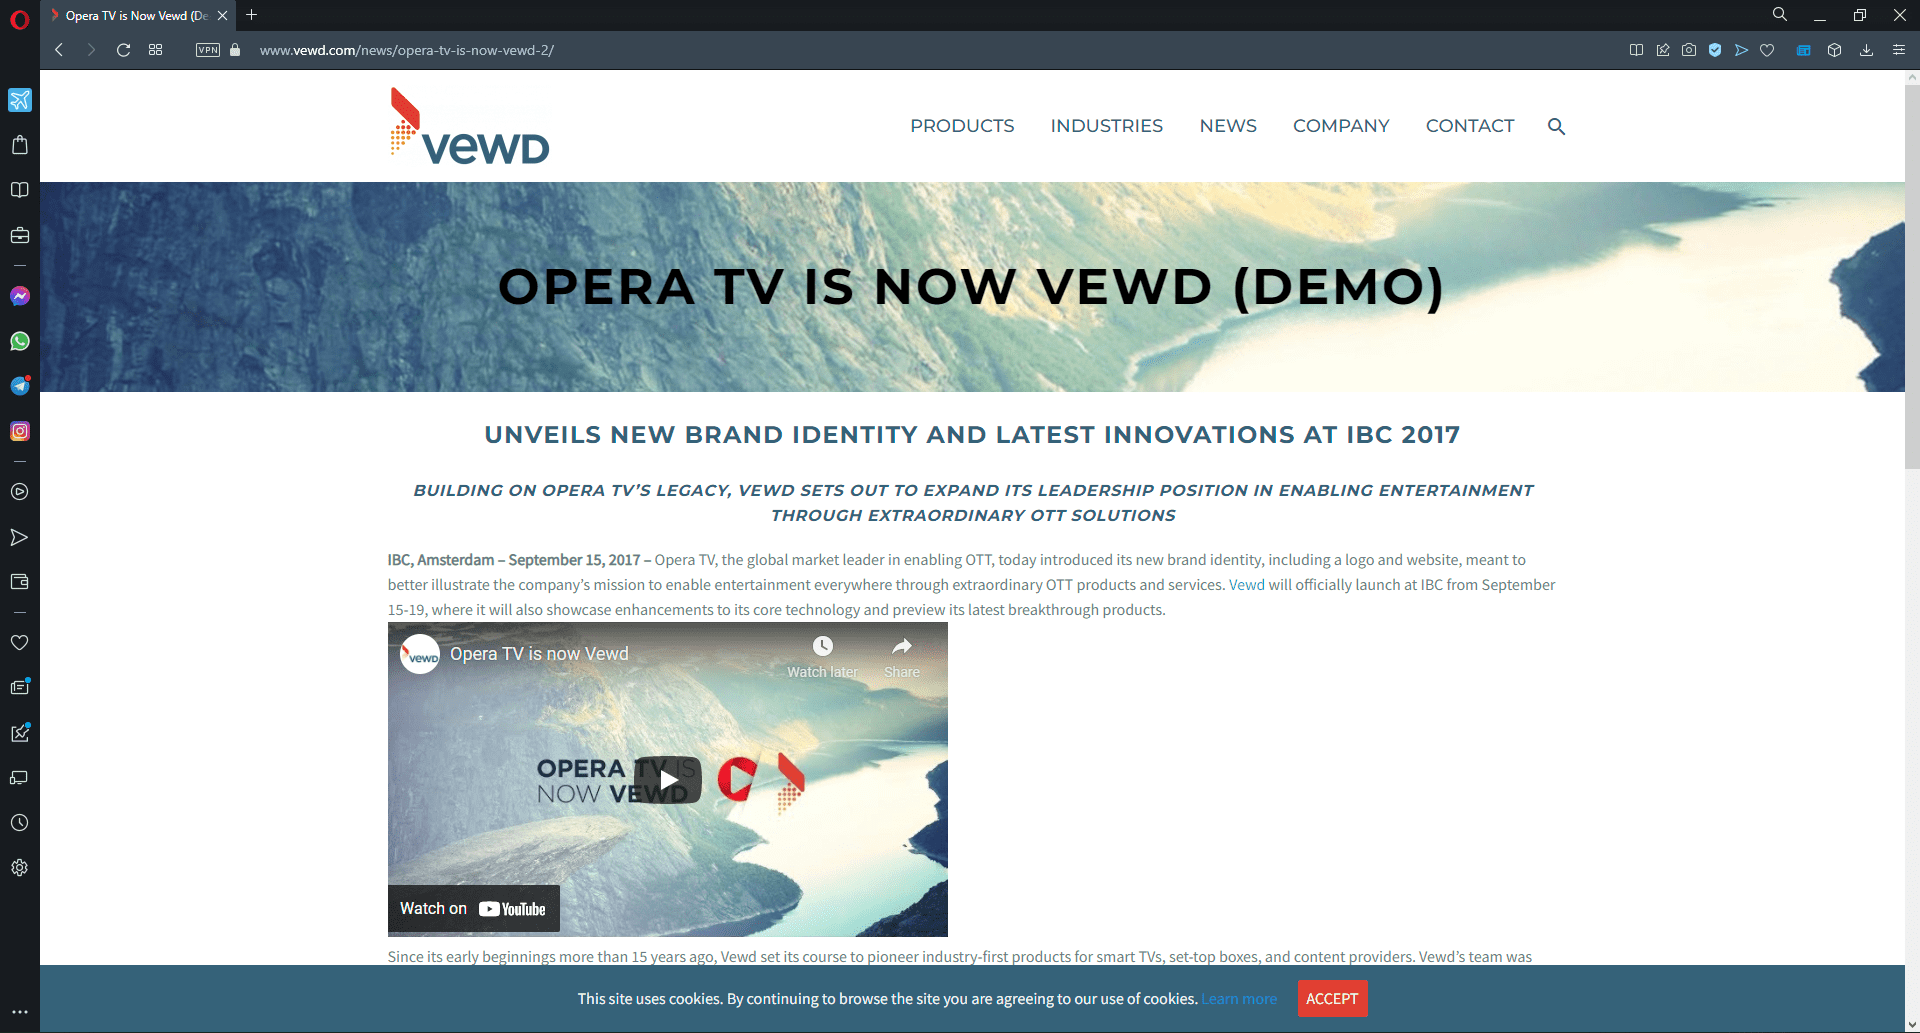 Opera TV became Vewd.